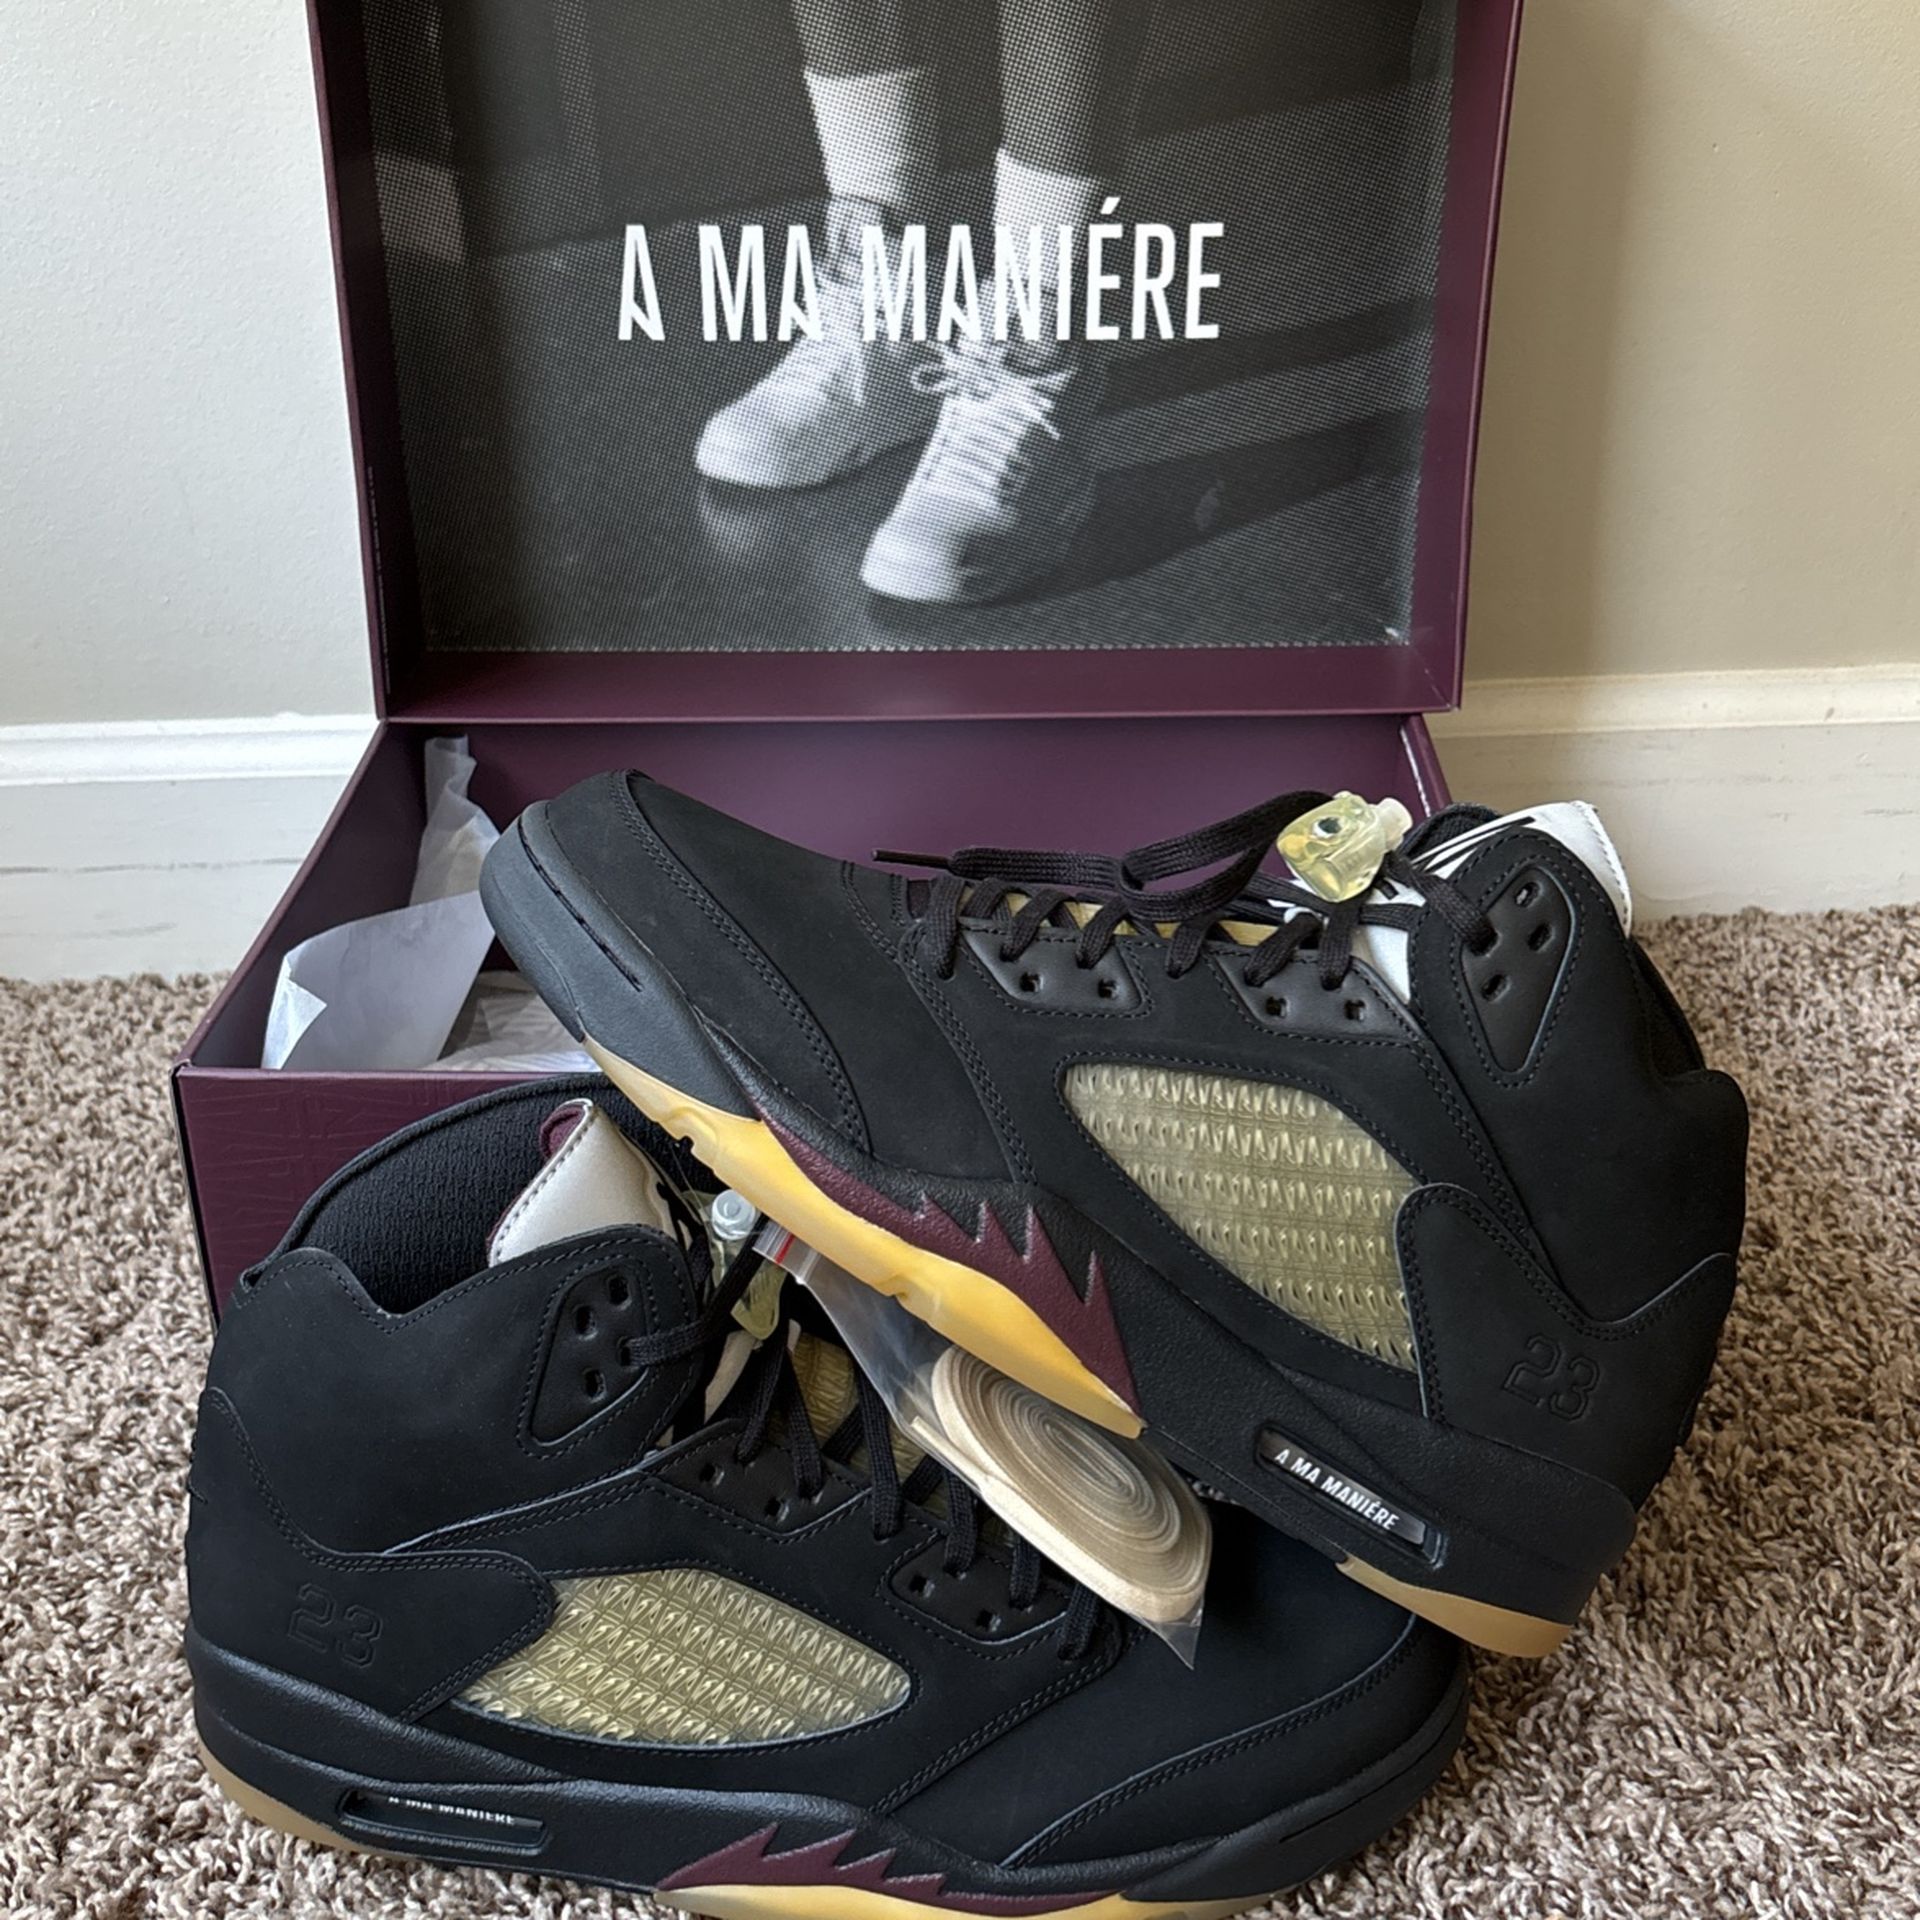 Air Jordan 5 Retro SP “A Ma Maniere Dusk” Mens Size 12 DS